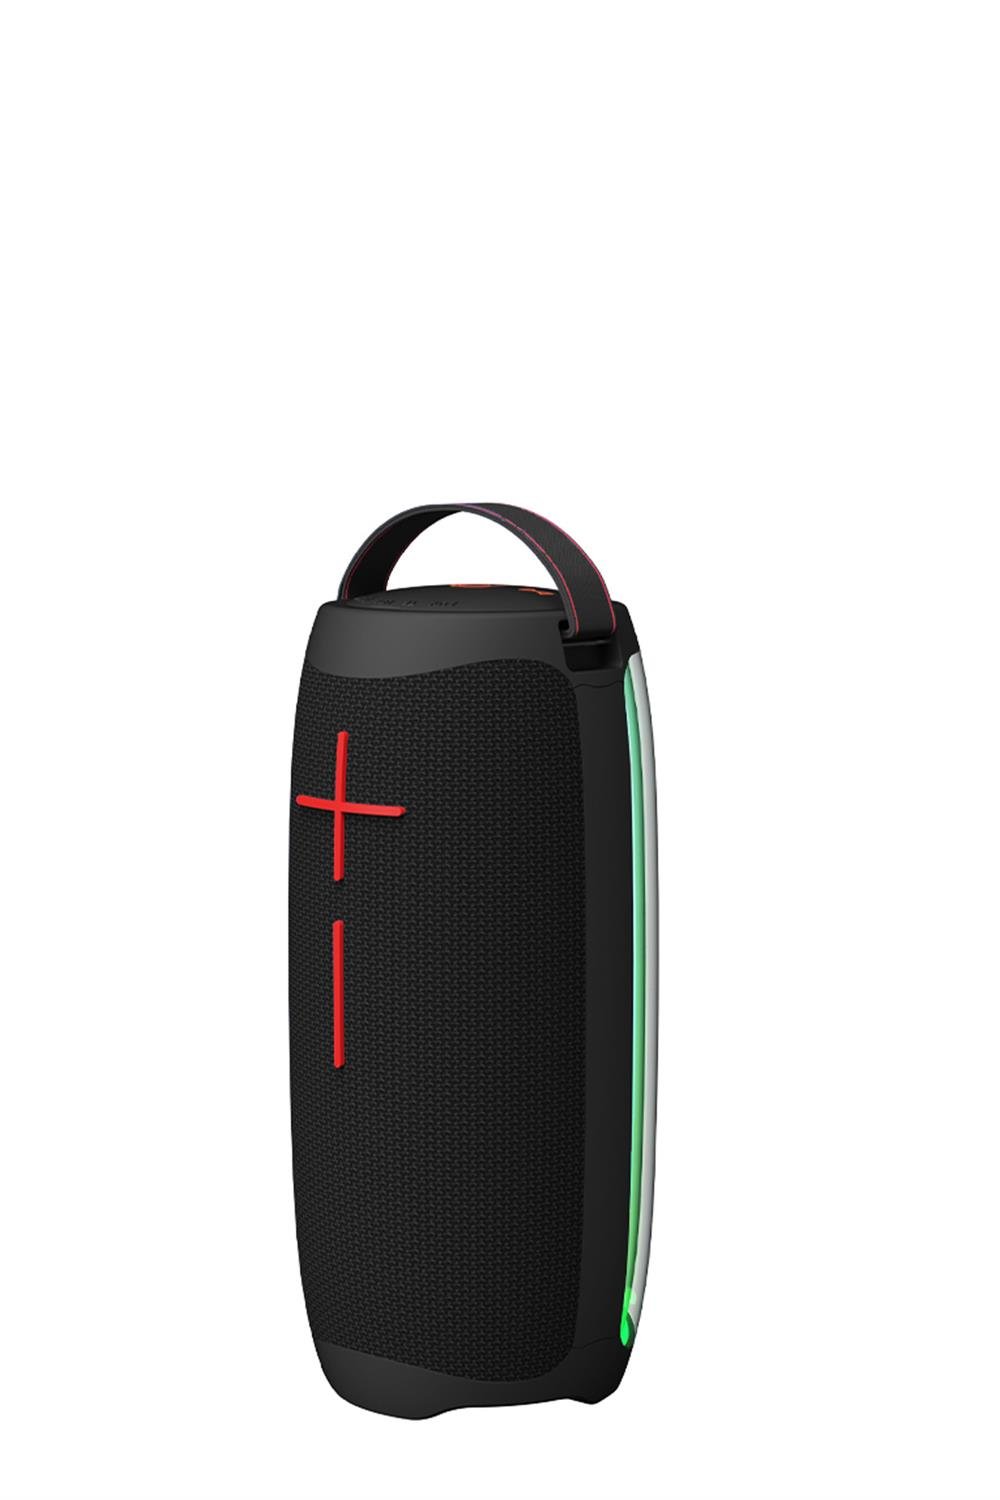 RTG V10S Pro Bluetooth Hoparlör RGB LED Işıklı Aux Sd Kart USB Taşınabilir Bluetooth  Speaker Siyah - RTG Store